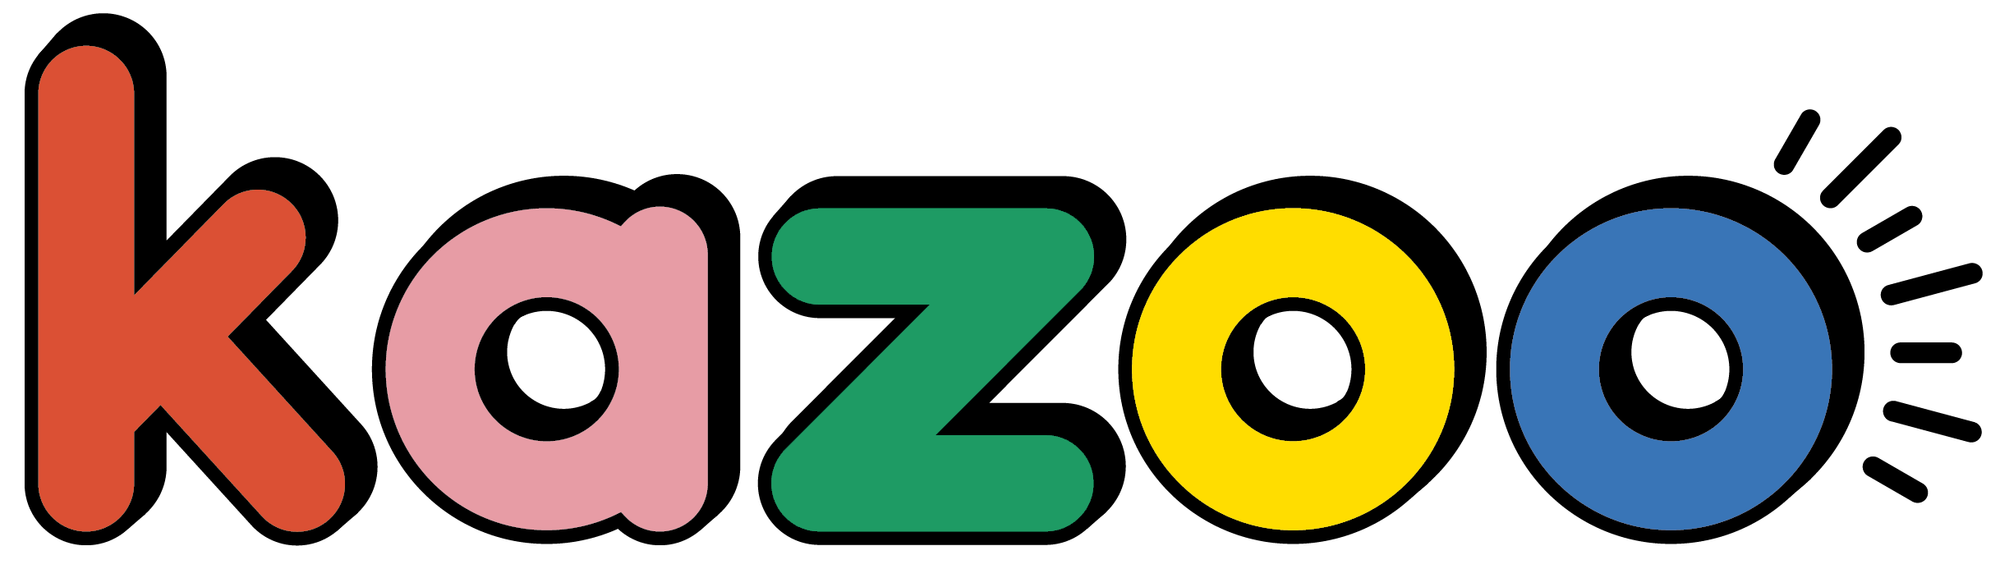 Kazoo magazine